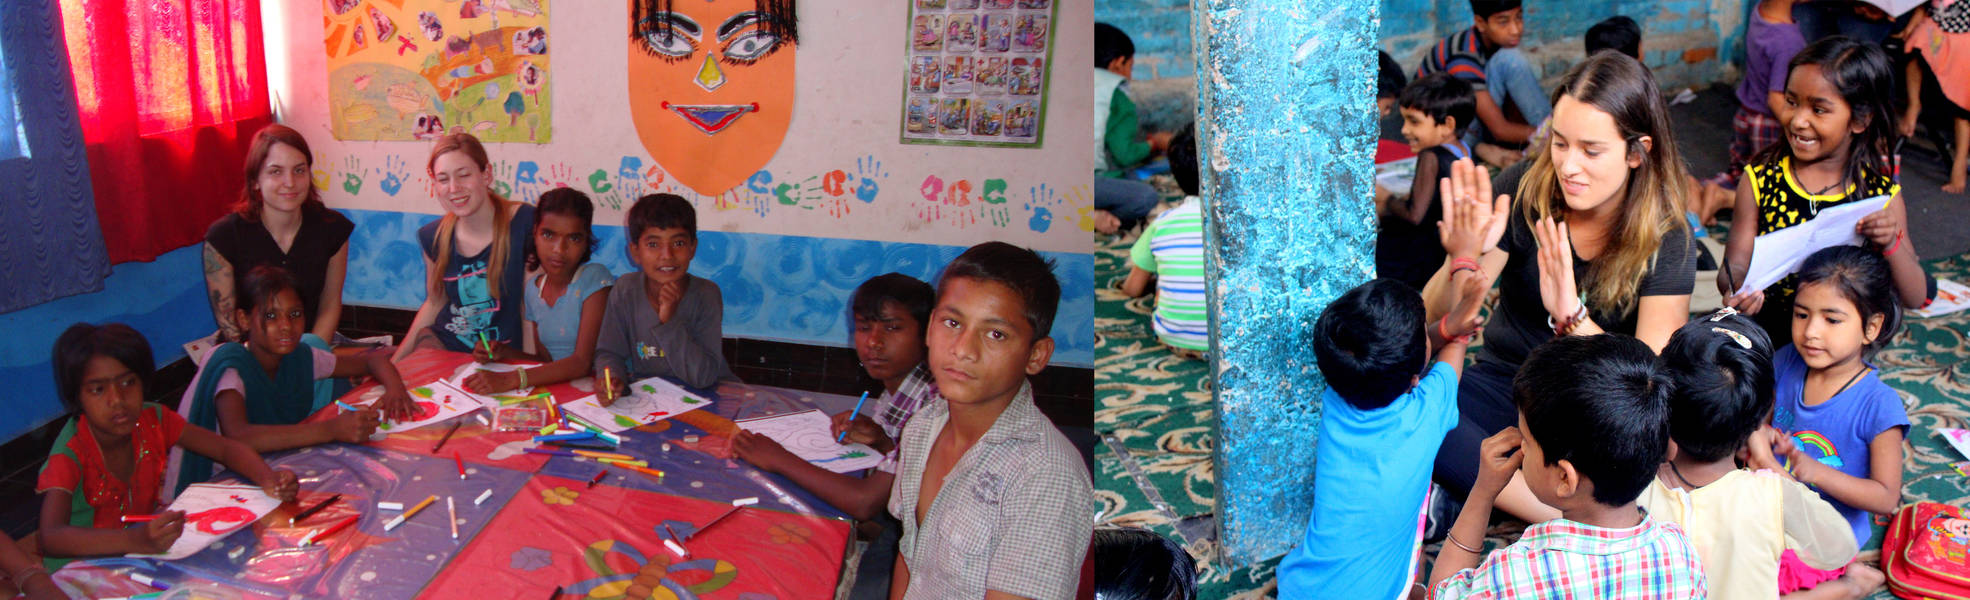 Freiwilligenarbeit im Straßenkinderprojekt in Delhi